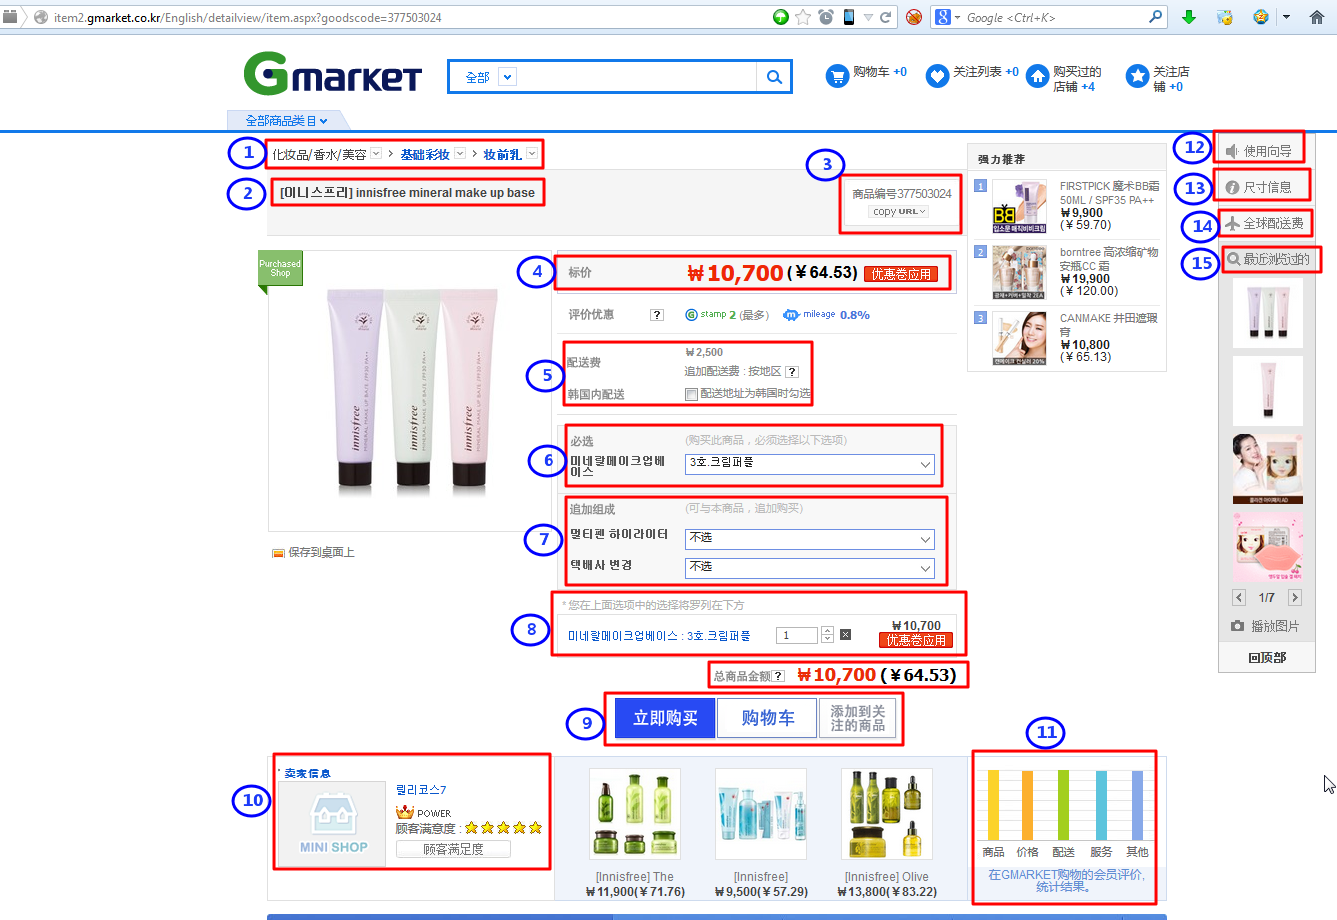 【整理】详细介绍Gmarket中商品页面内容组成和含义